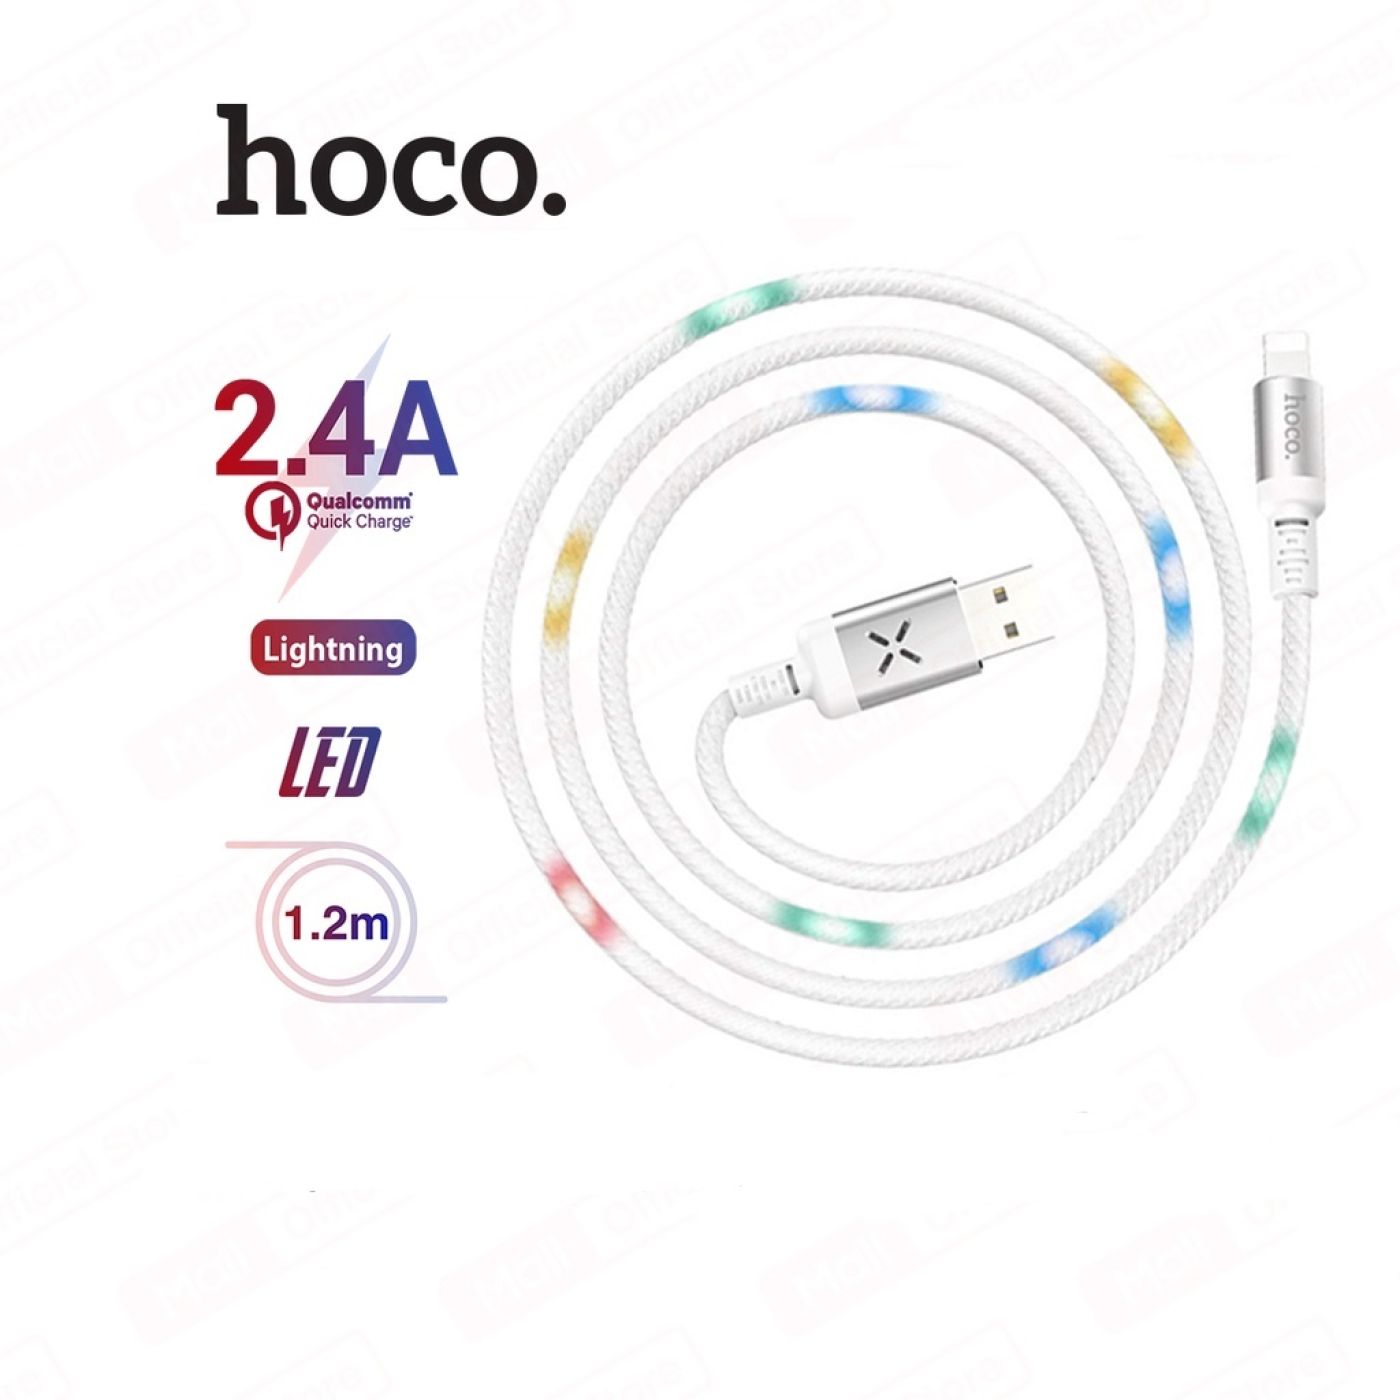 Cáp sạc nhanh Lightning Hoco U63 nguồn ra 2.4A Max, có đèn LED phát sáng khi sạc trên dây